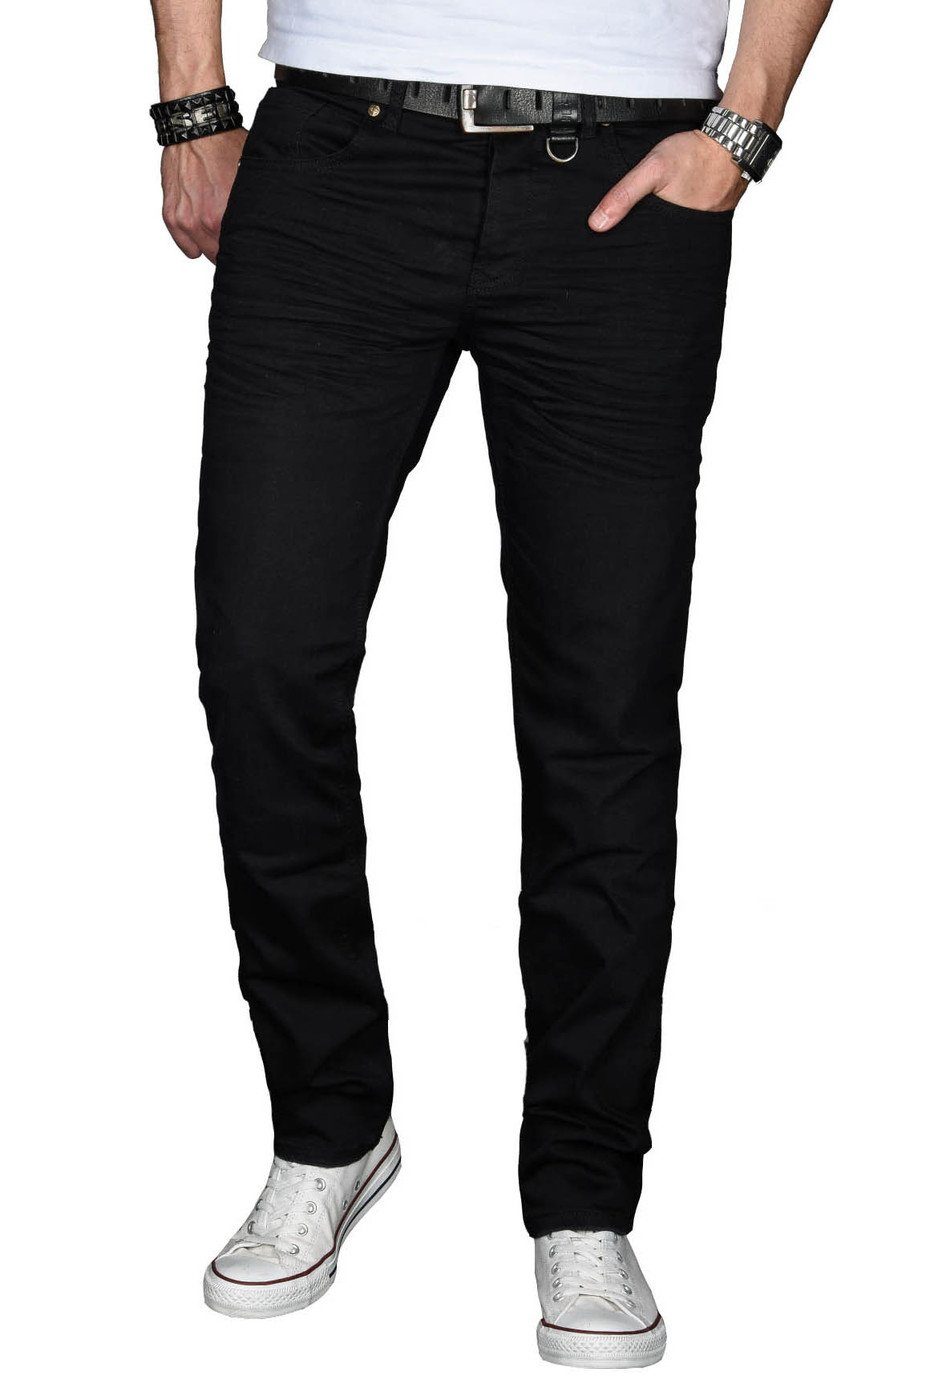 Slim ASMinero Straight-Jeans 2% mit Elasthan Salvarini Fit Jeans black Alessandro